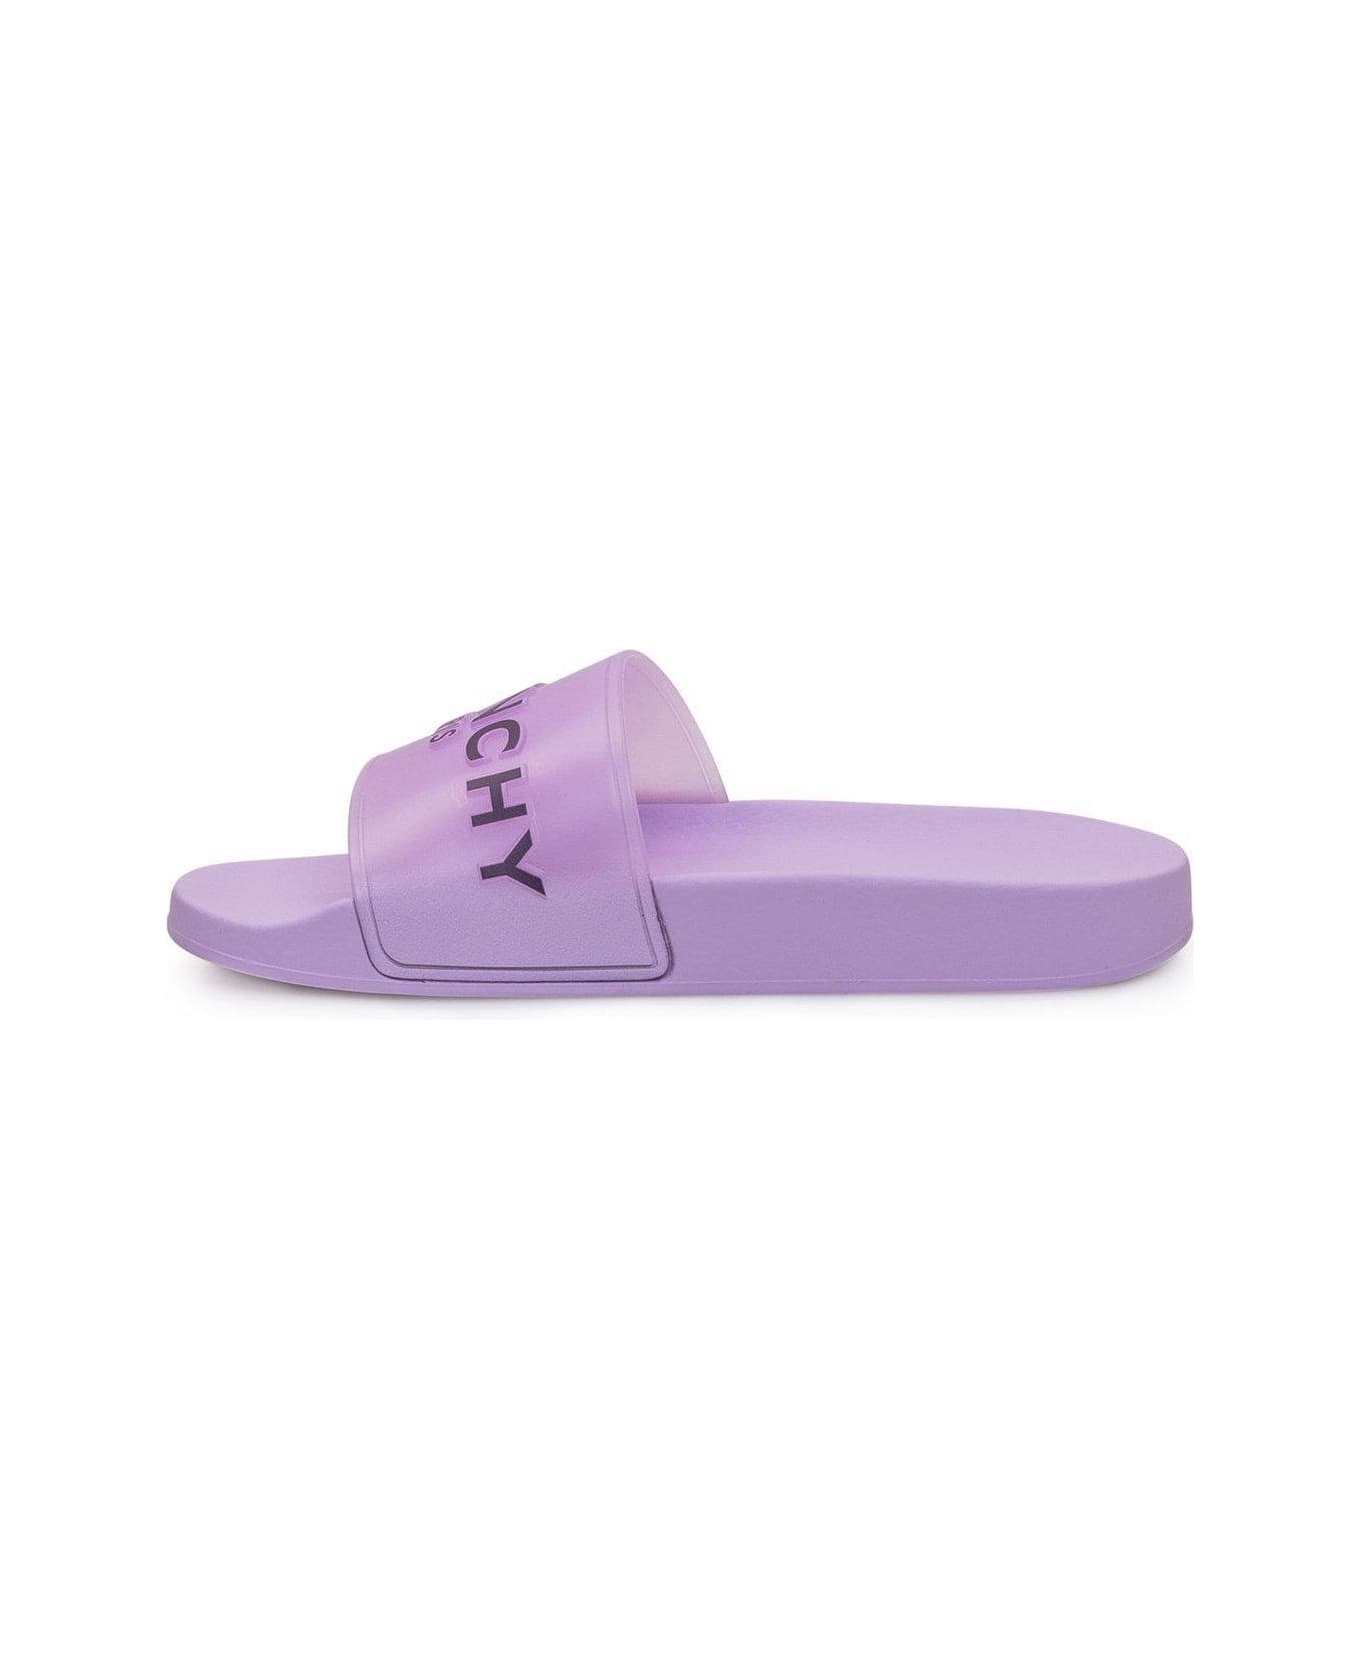 Givenchy Paris Flat Sandals - LILAC サンダル